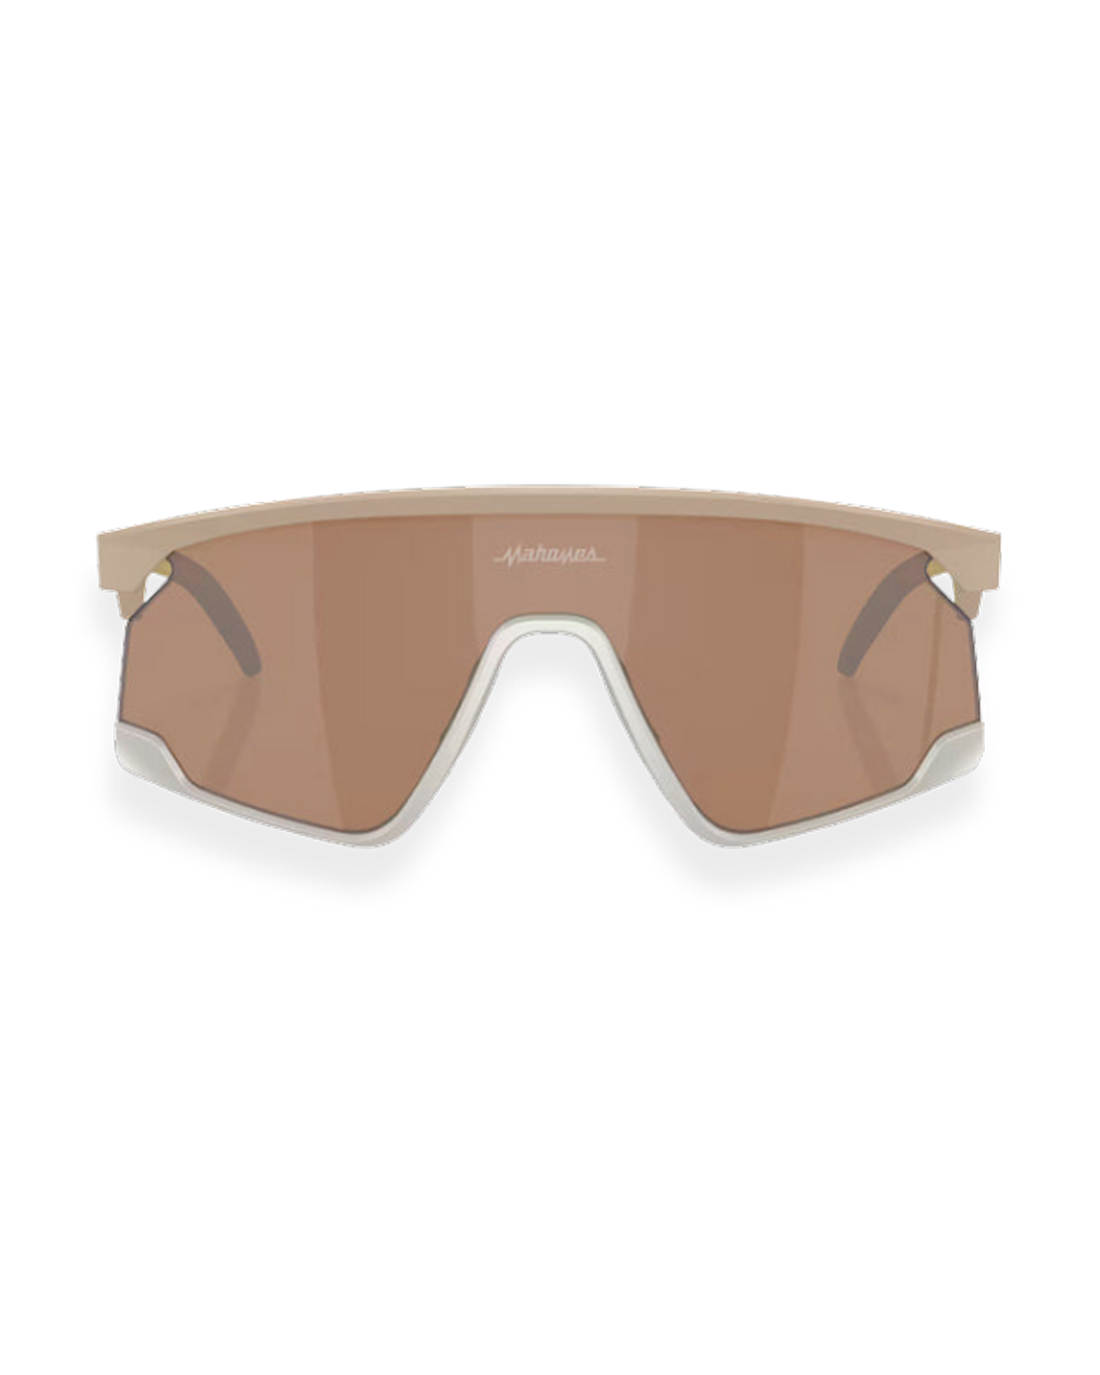 Oakley BXTR Patrick Mahomes II Collection Sunglasses - Matte Terrain Tan/ Prizm Tungsten - Oakley